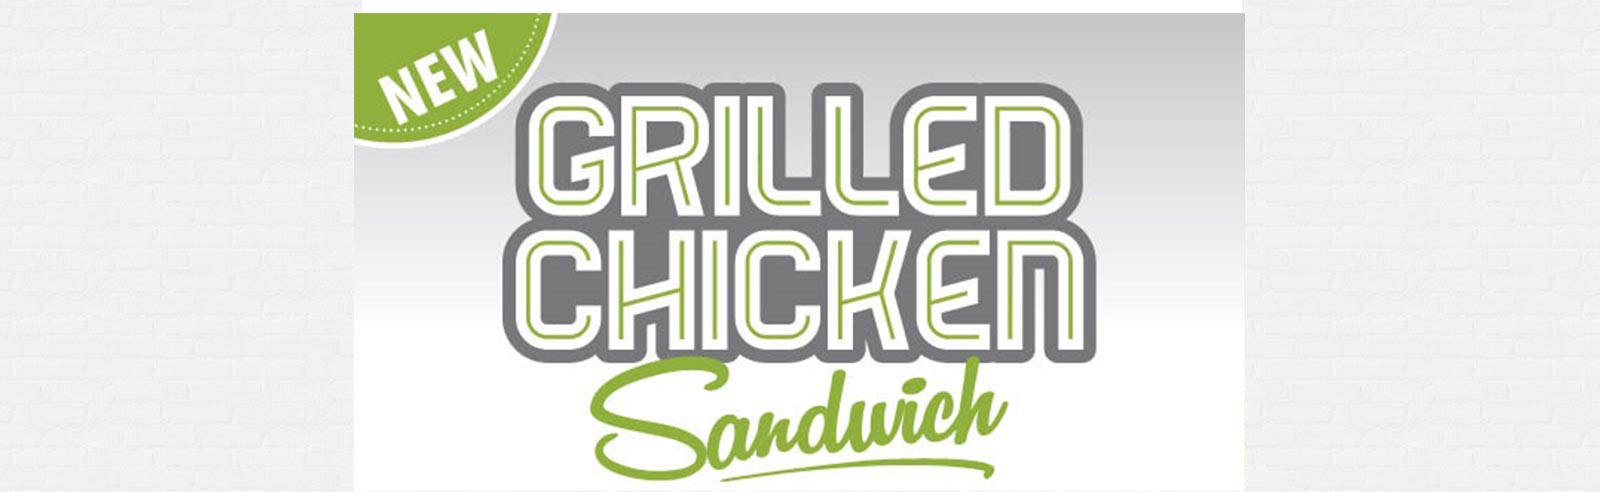 New Supermac’s Grilled Chicken Sandwich